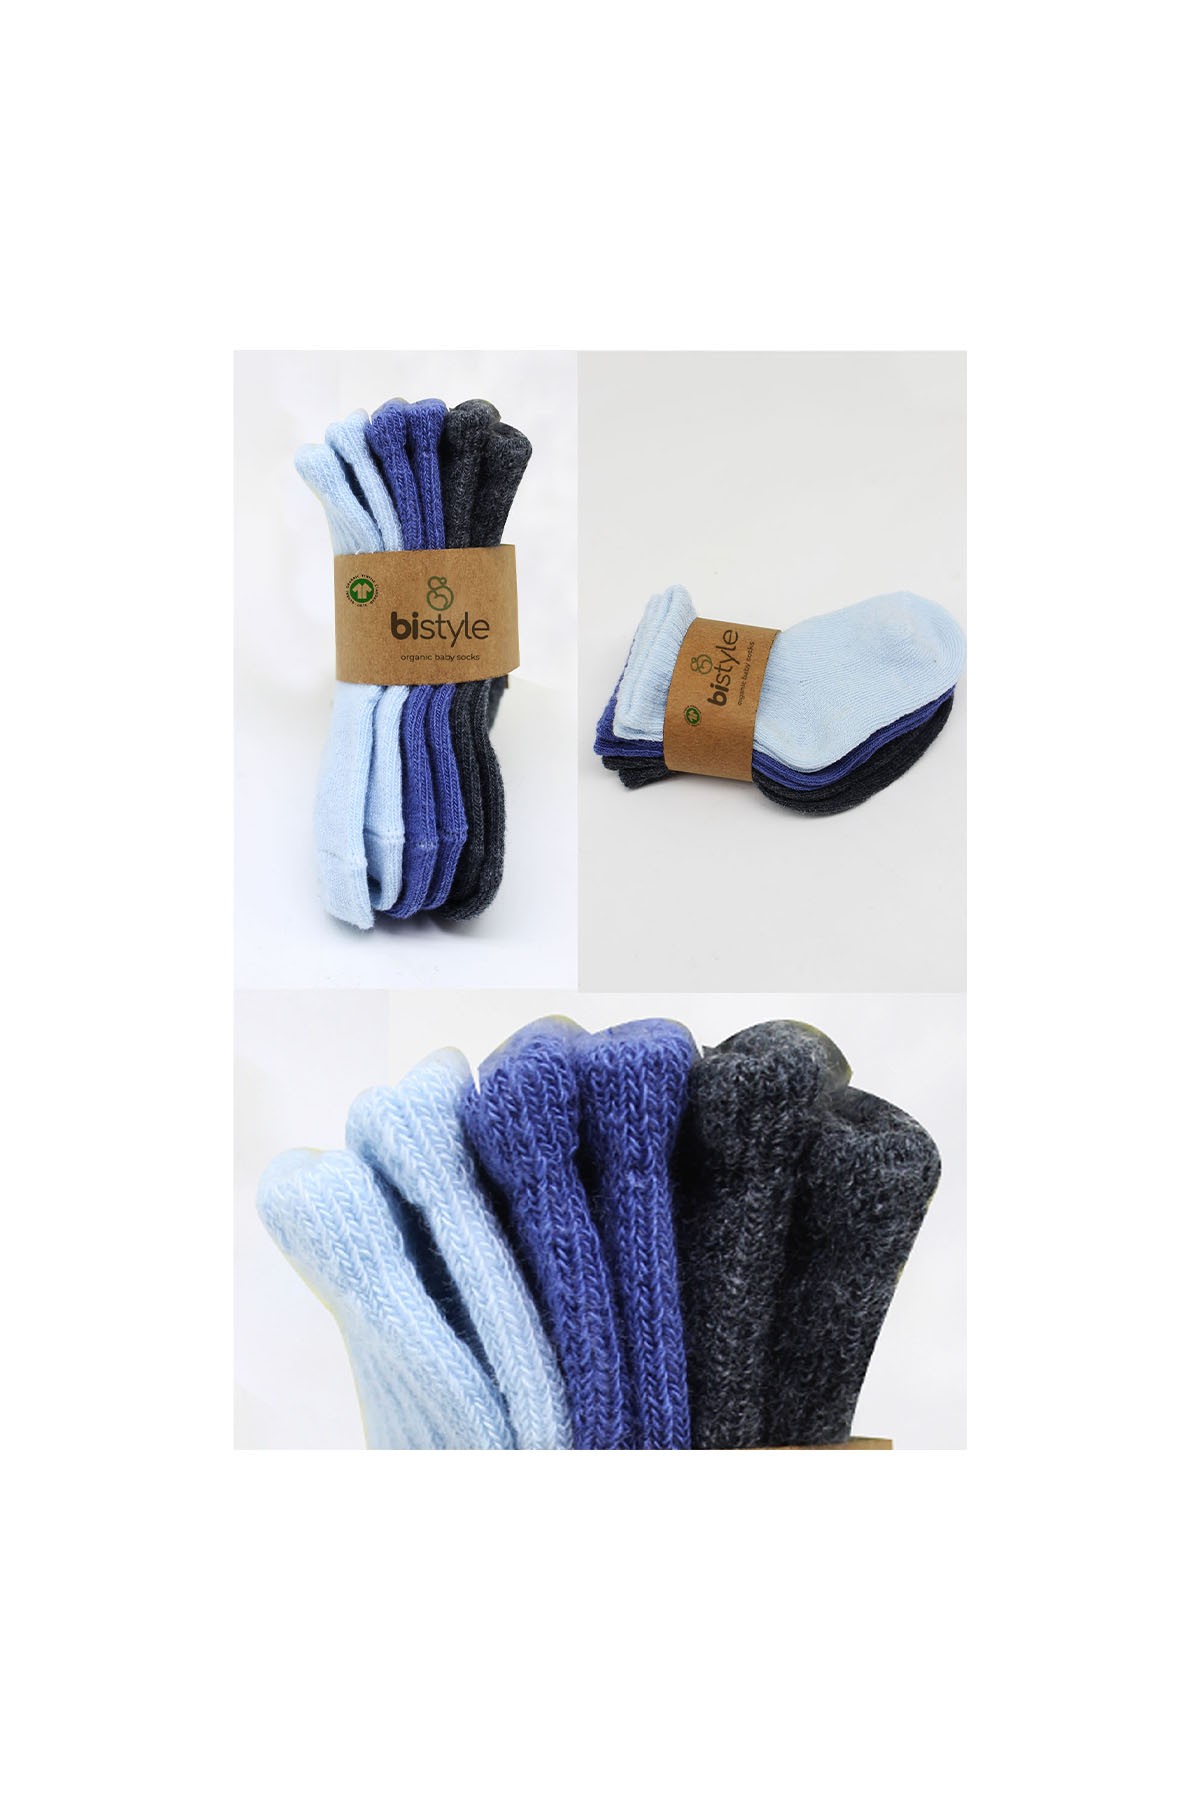 Bistyle 3'lü Penye Bebek Çorabı Lacivert Mavi Çok Renkli